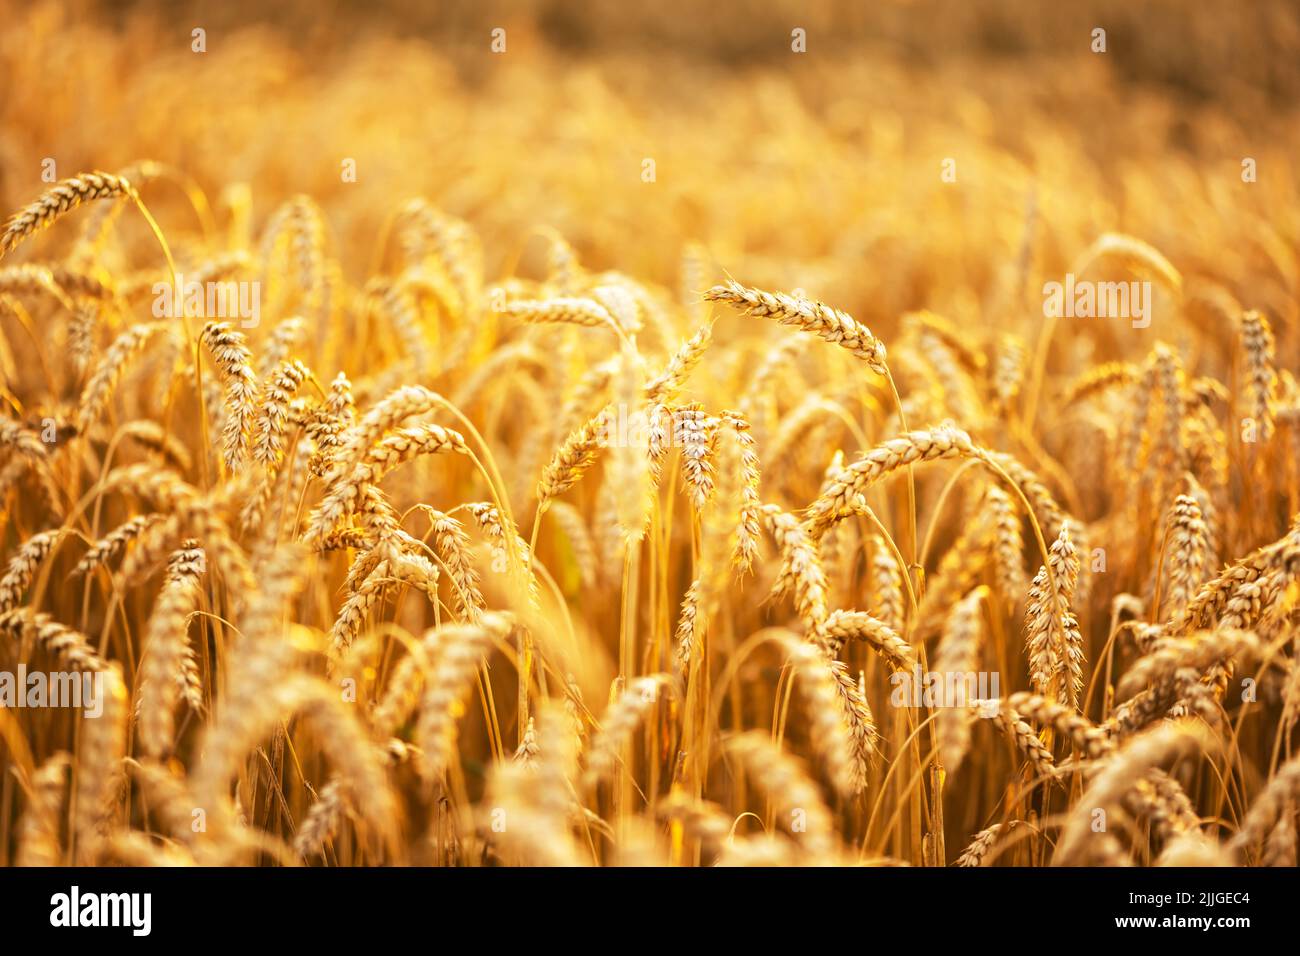 Reife Weizenspikelets auf goldenem Feld, die durch das orangefarbene Abendlicht leuchten. Industrie- und Naturhintergrund. Ukraine, Europa Stockfoto